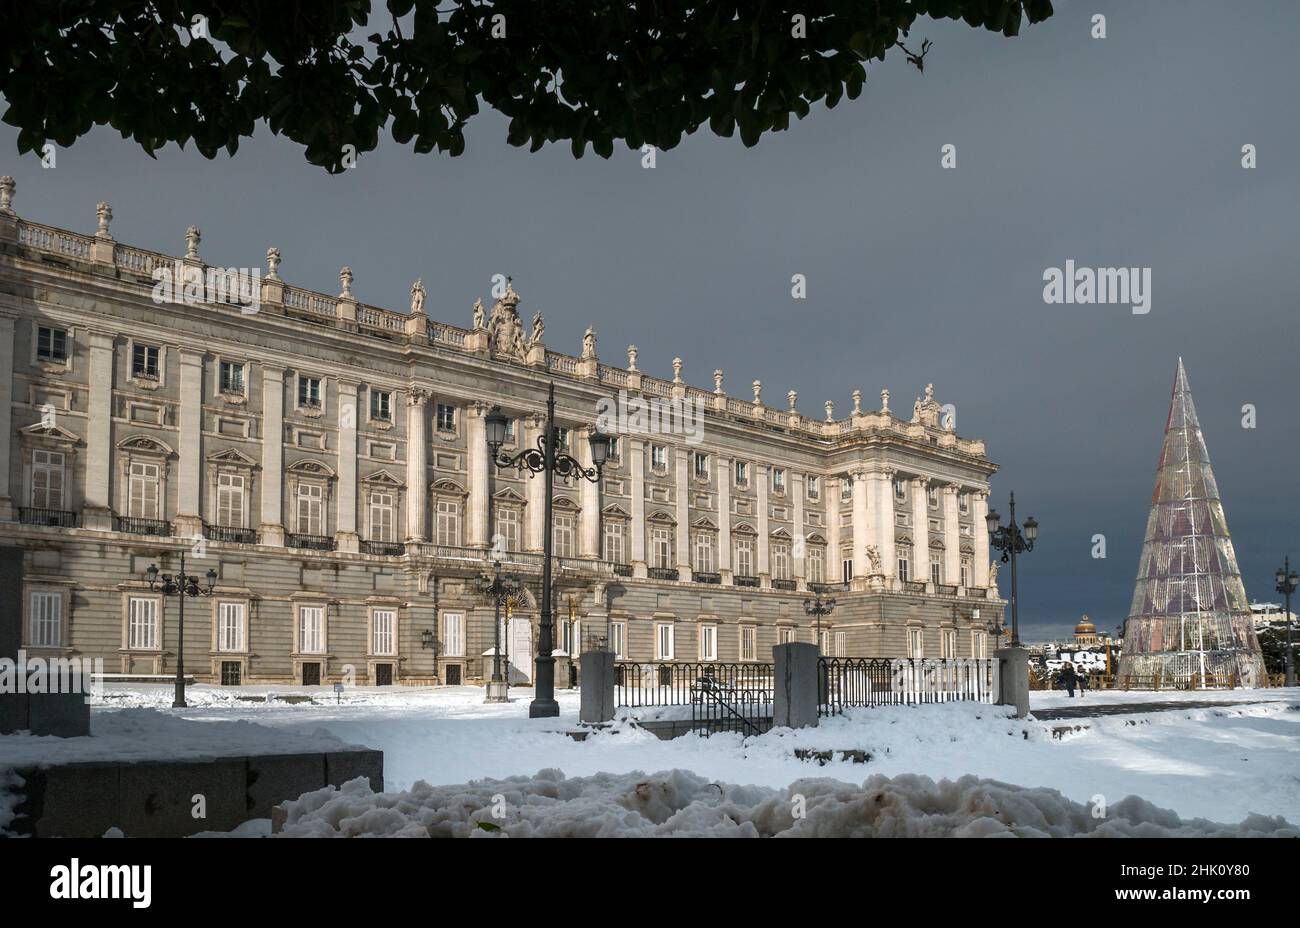 Palacio Real nevado. Madrid. España. Stock Photo